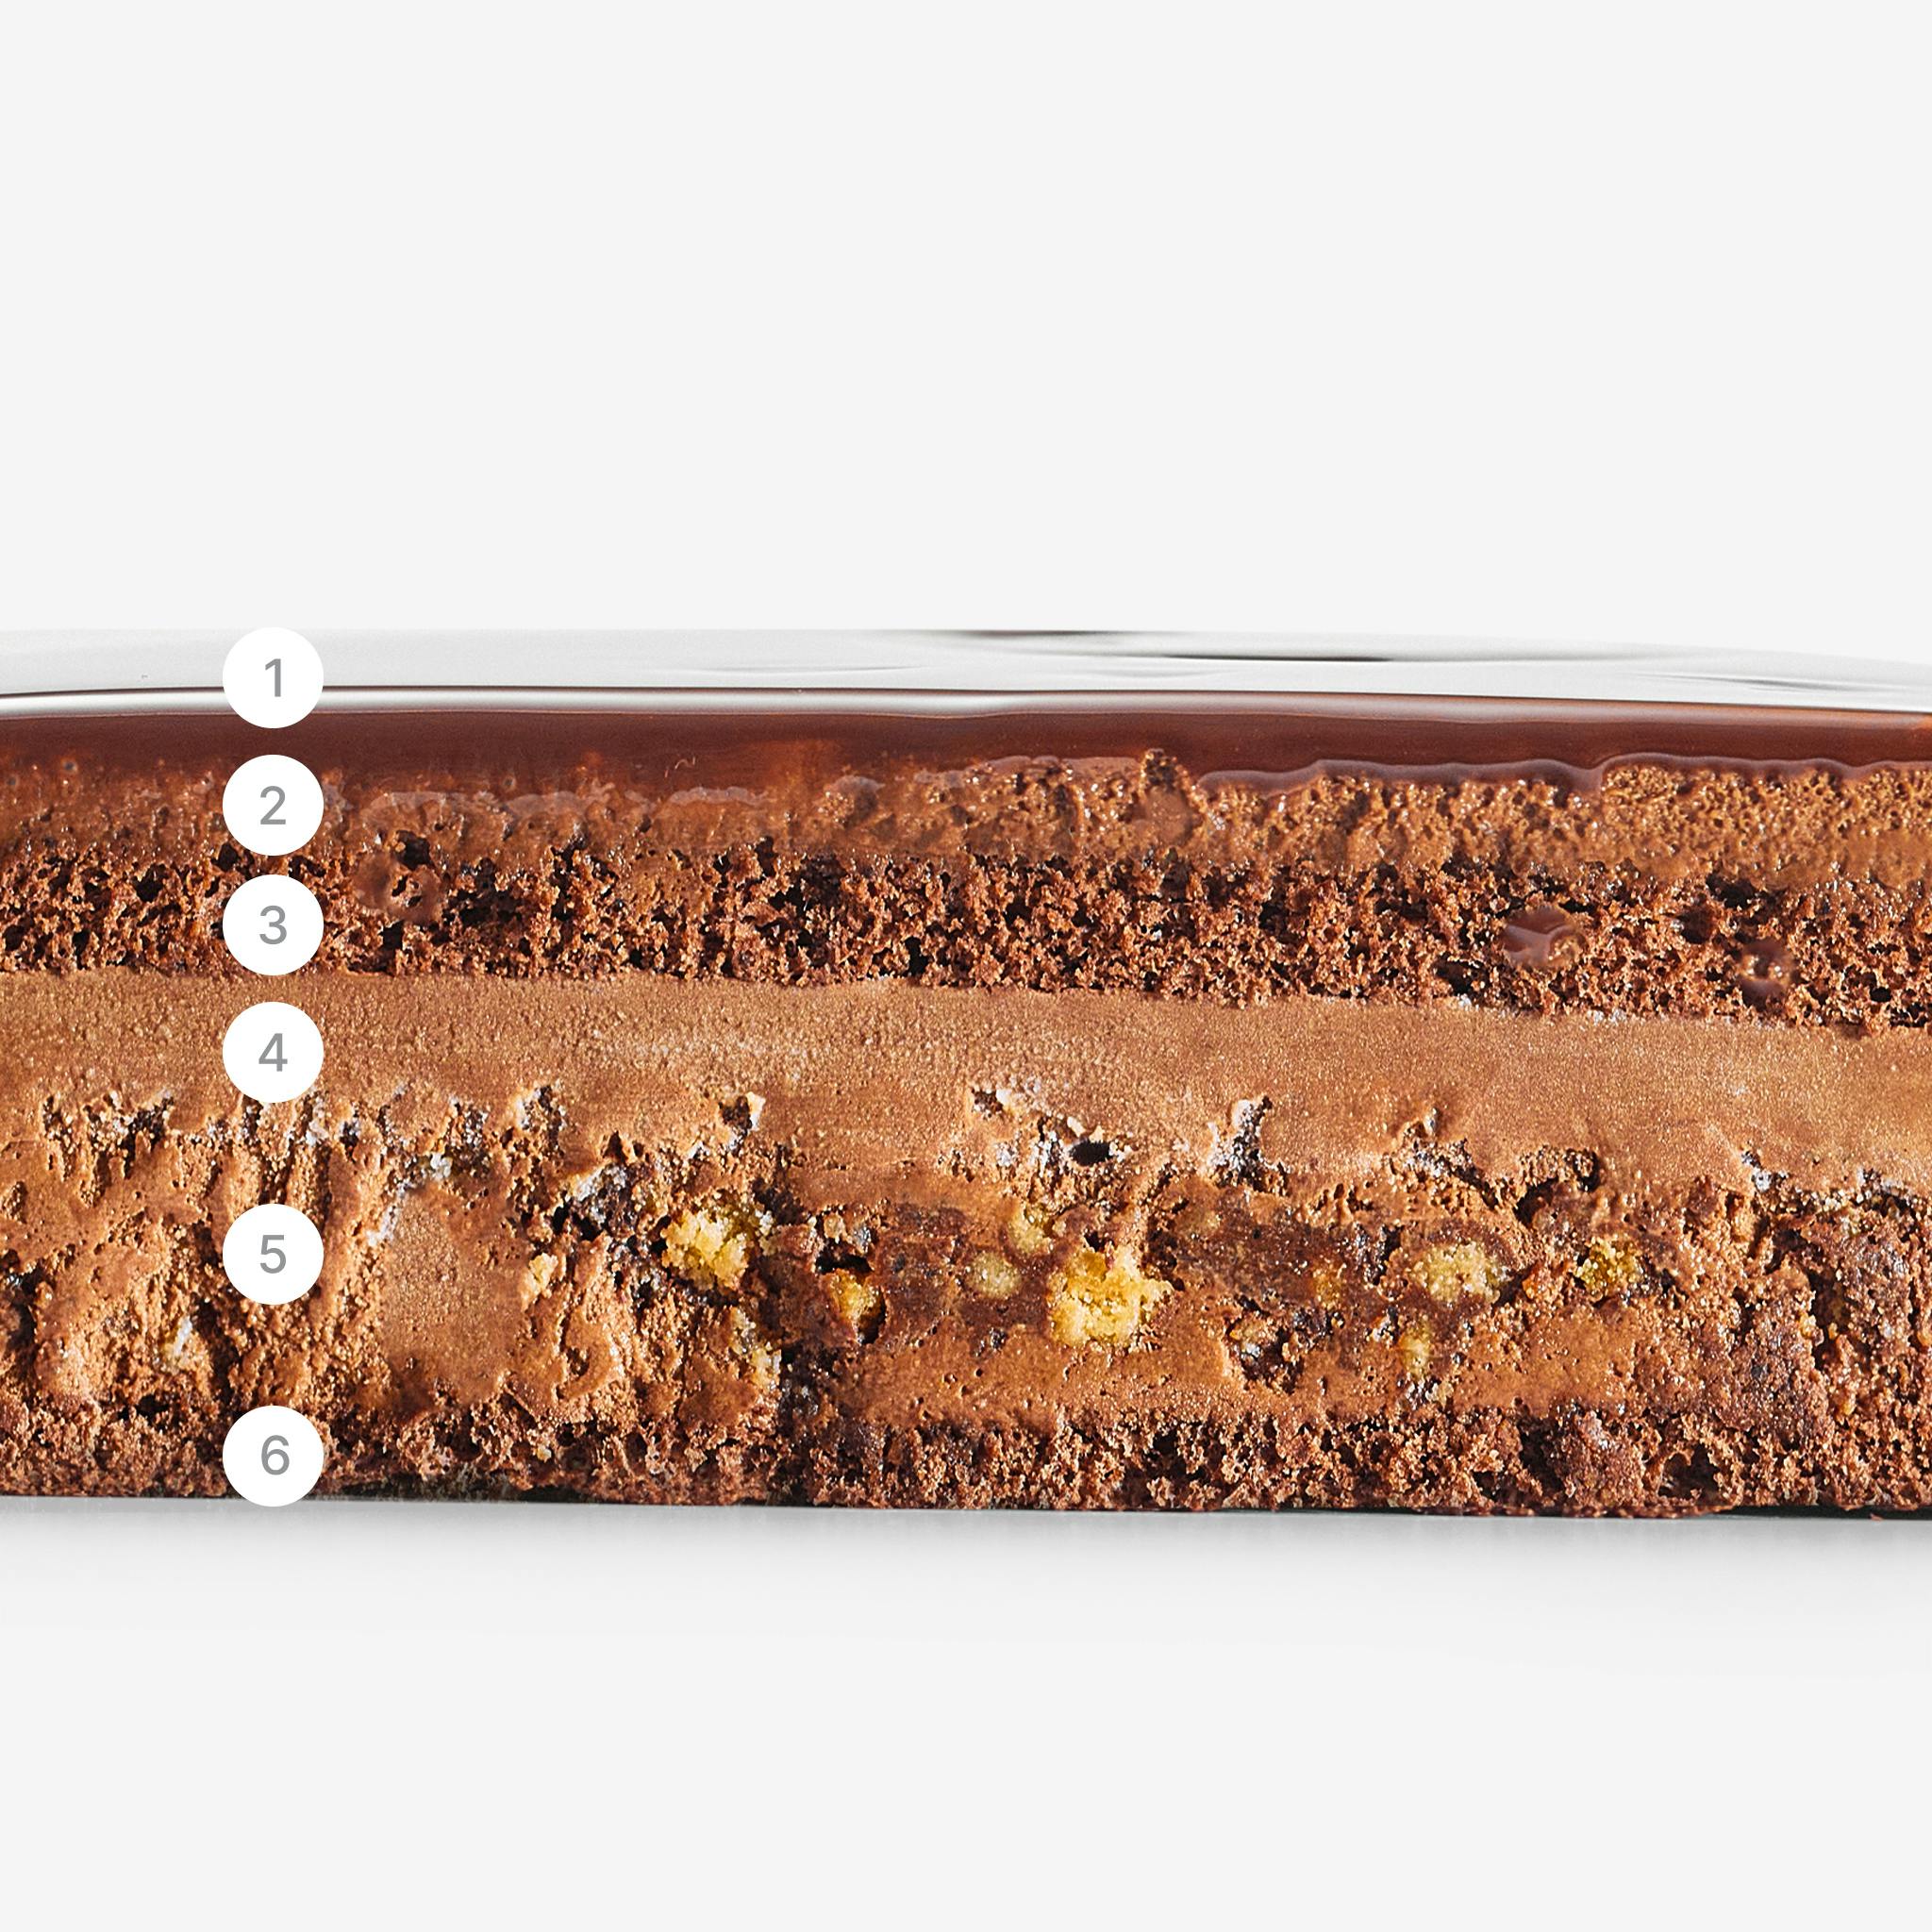 LaFuong Pastry – Choco Therapy – Sô-cô-la & Sô-cô-la. Choco Therapy là chiếc bánh Entremet đầu tiên của LaFuong mà tất cả mọi thứ trong đó đều được làm từ sô-cô-la.,Được biến tấu với những tầng kết cấu sô-cô-la hoàn toàn khác nhau và được làm từ những hạt cacao hảo hạng nhất.,Bắt đầu từ Dark Chocolate Mousse mịn mượt, cho tới Chocolate Crémeux ngầy ngậy, lớp Sponge mềm xốp rồi cuối cùng là Almond Chocolate Crumble bùi bùi giòn rụm.,Nếu là fan của sô-cô-la, chiếc bánh này sẽ chiếm lấy trái tim bạn.